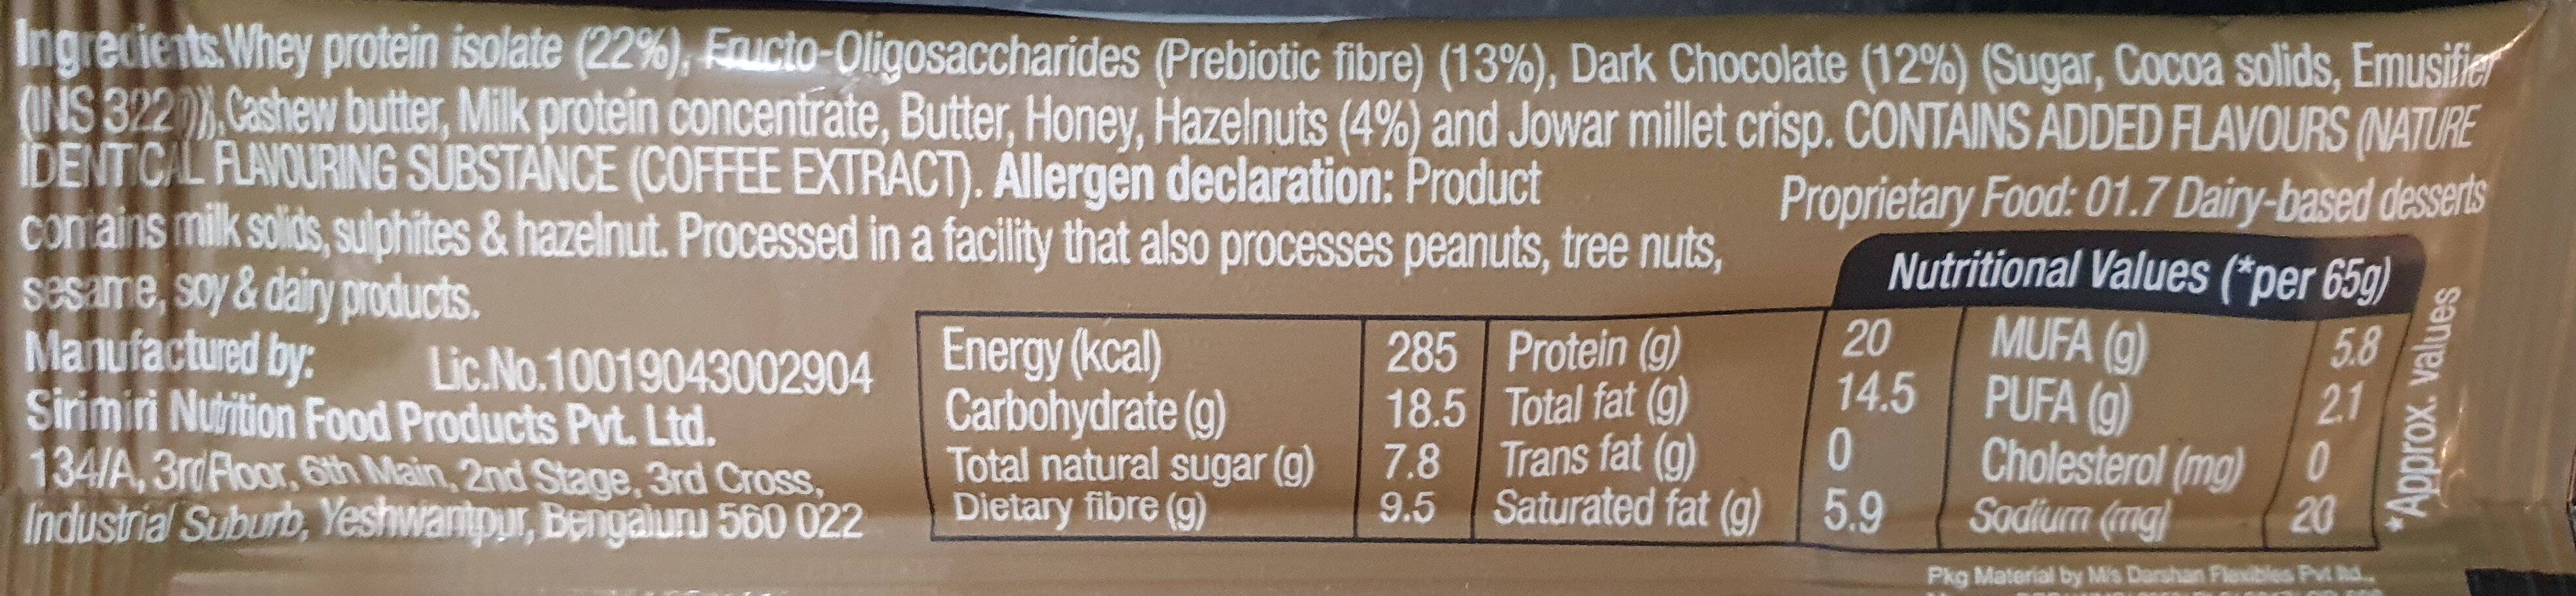 20g Protein Bar - Ingredients